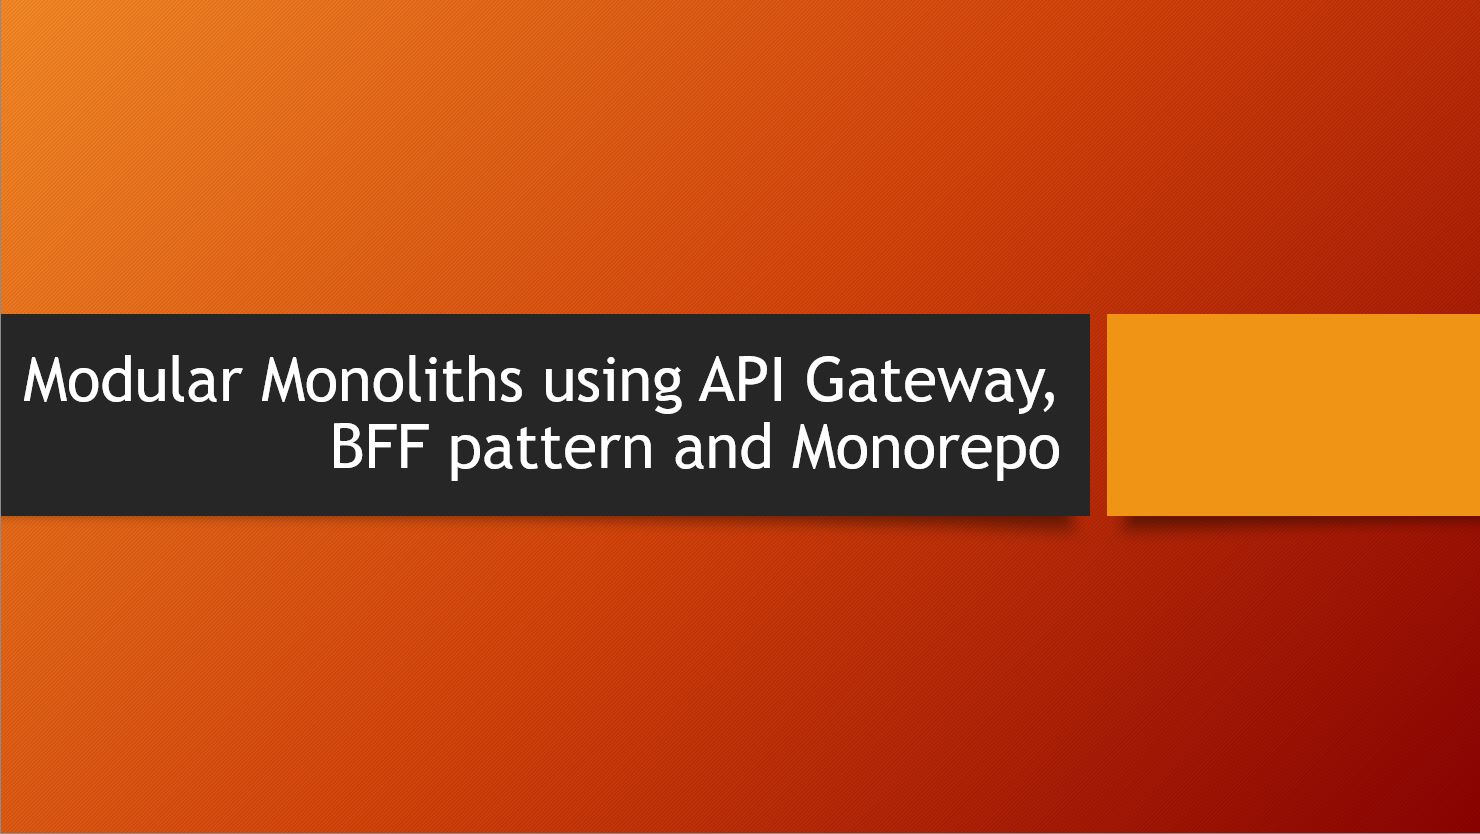 Modular Monoliths using API Gateway, BFF pattern and Monorepo